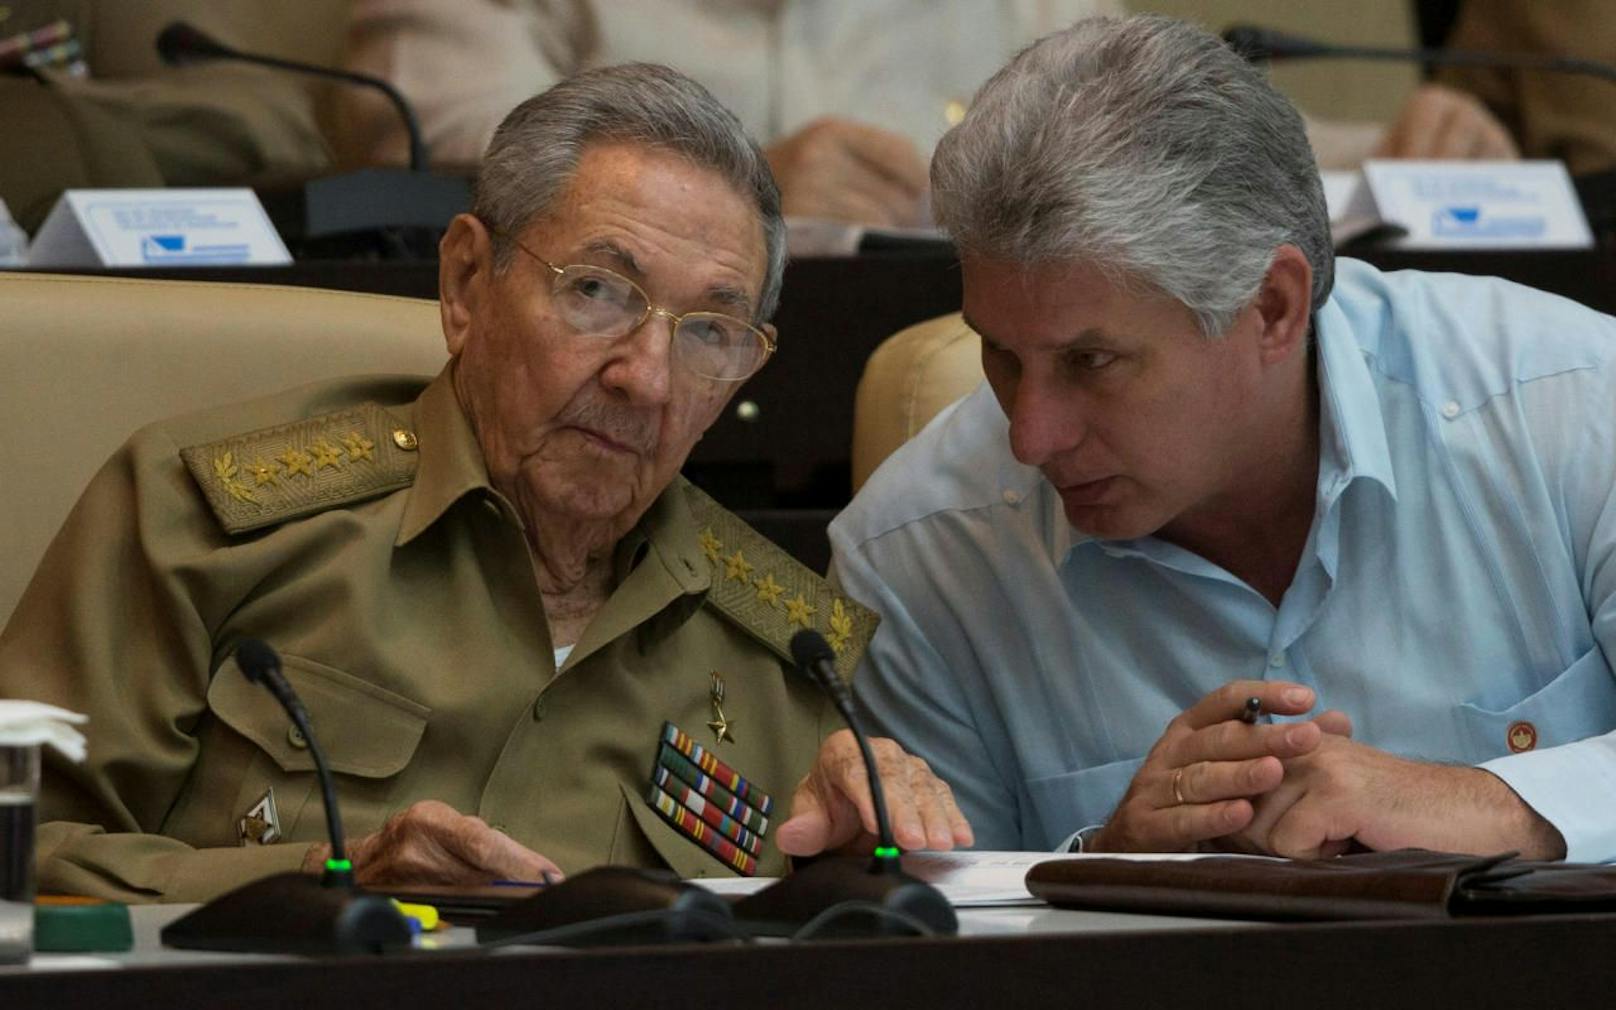 "Richard Gere der Karibik" übernimmt Ruder auf Kuba